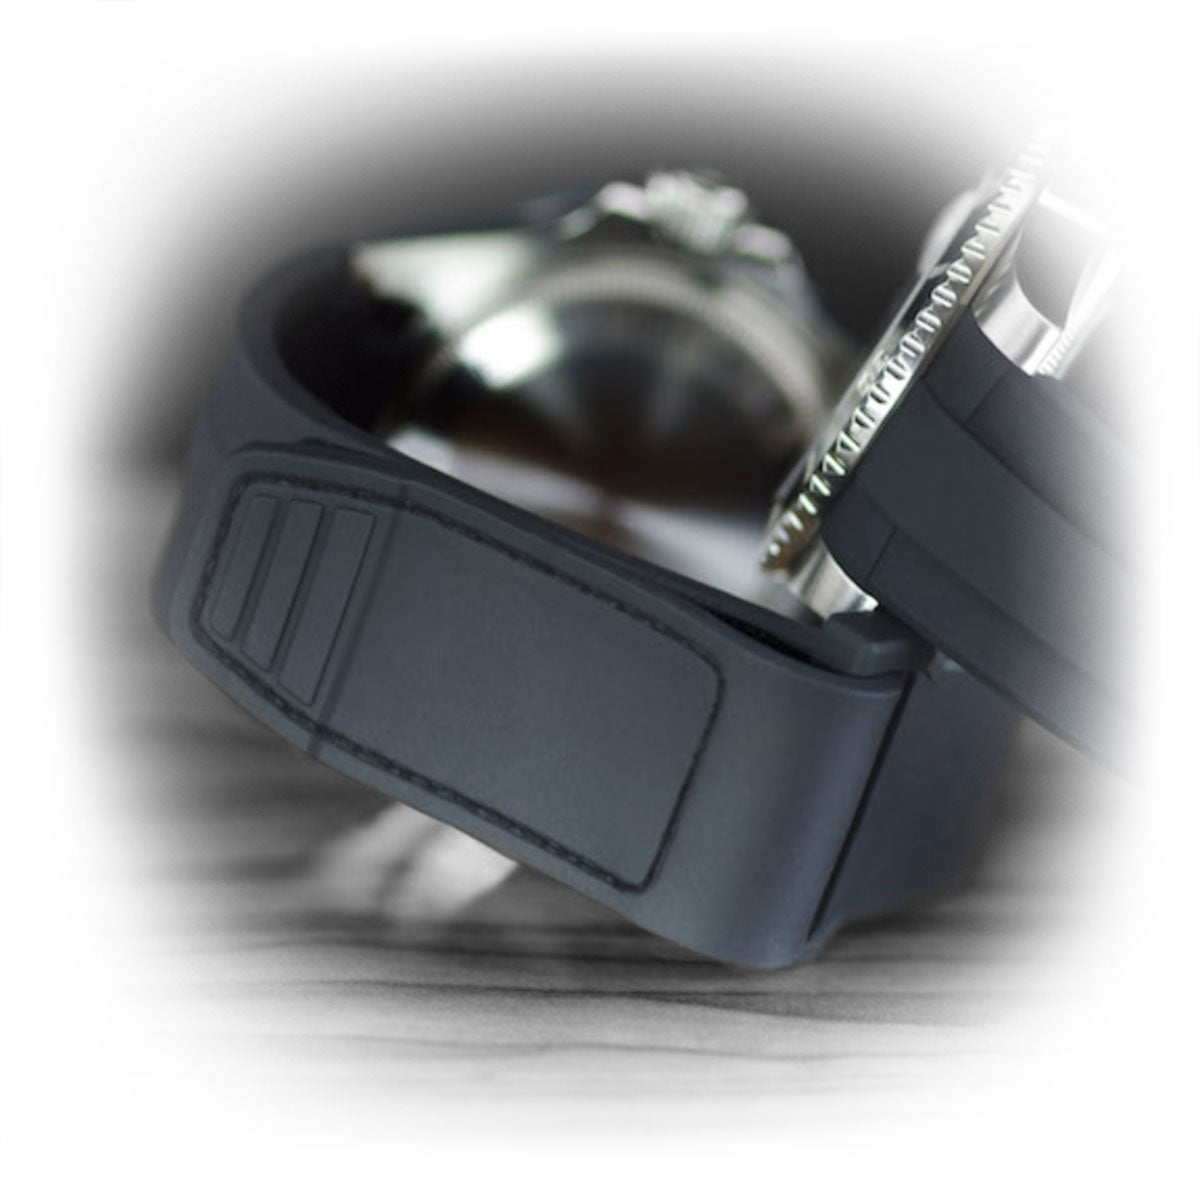 Rolex - Rubber B - Bracelet caoutchouc pour Yachtmaster 40mm - Série Velcro® - watch band leather strap - ABP Concept -